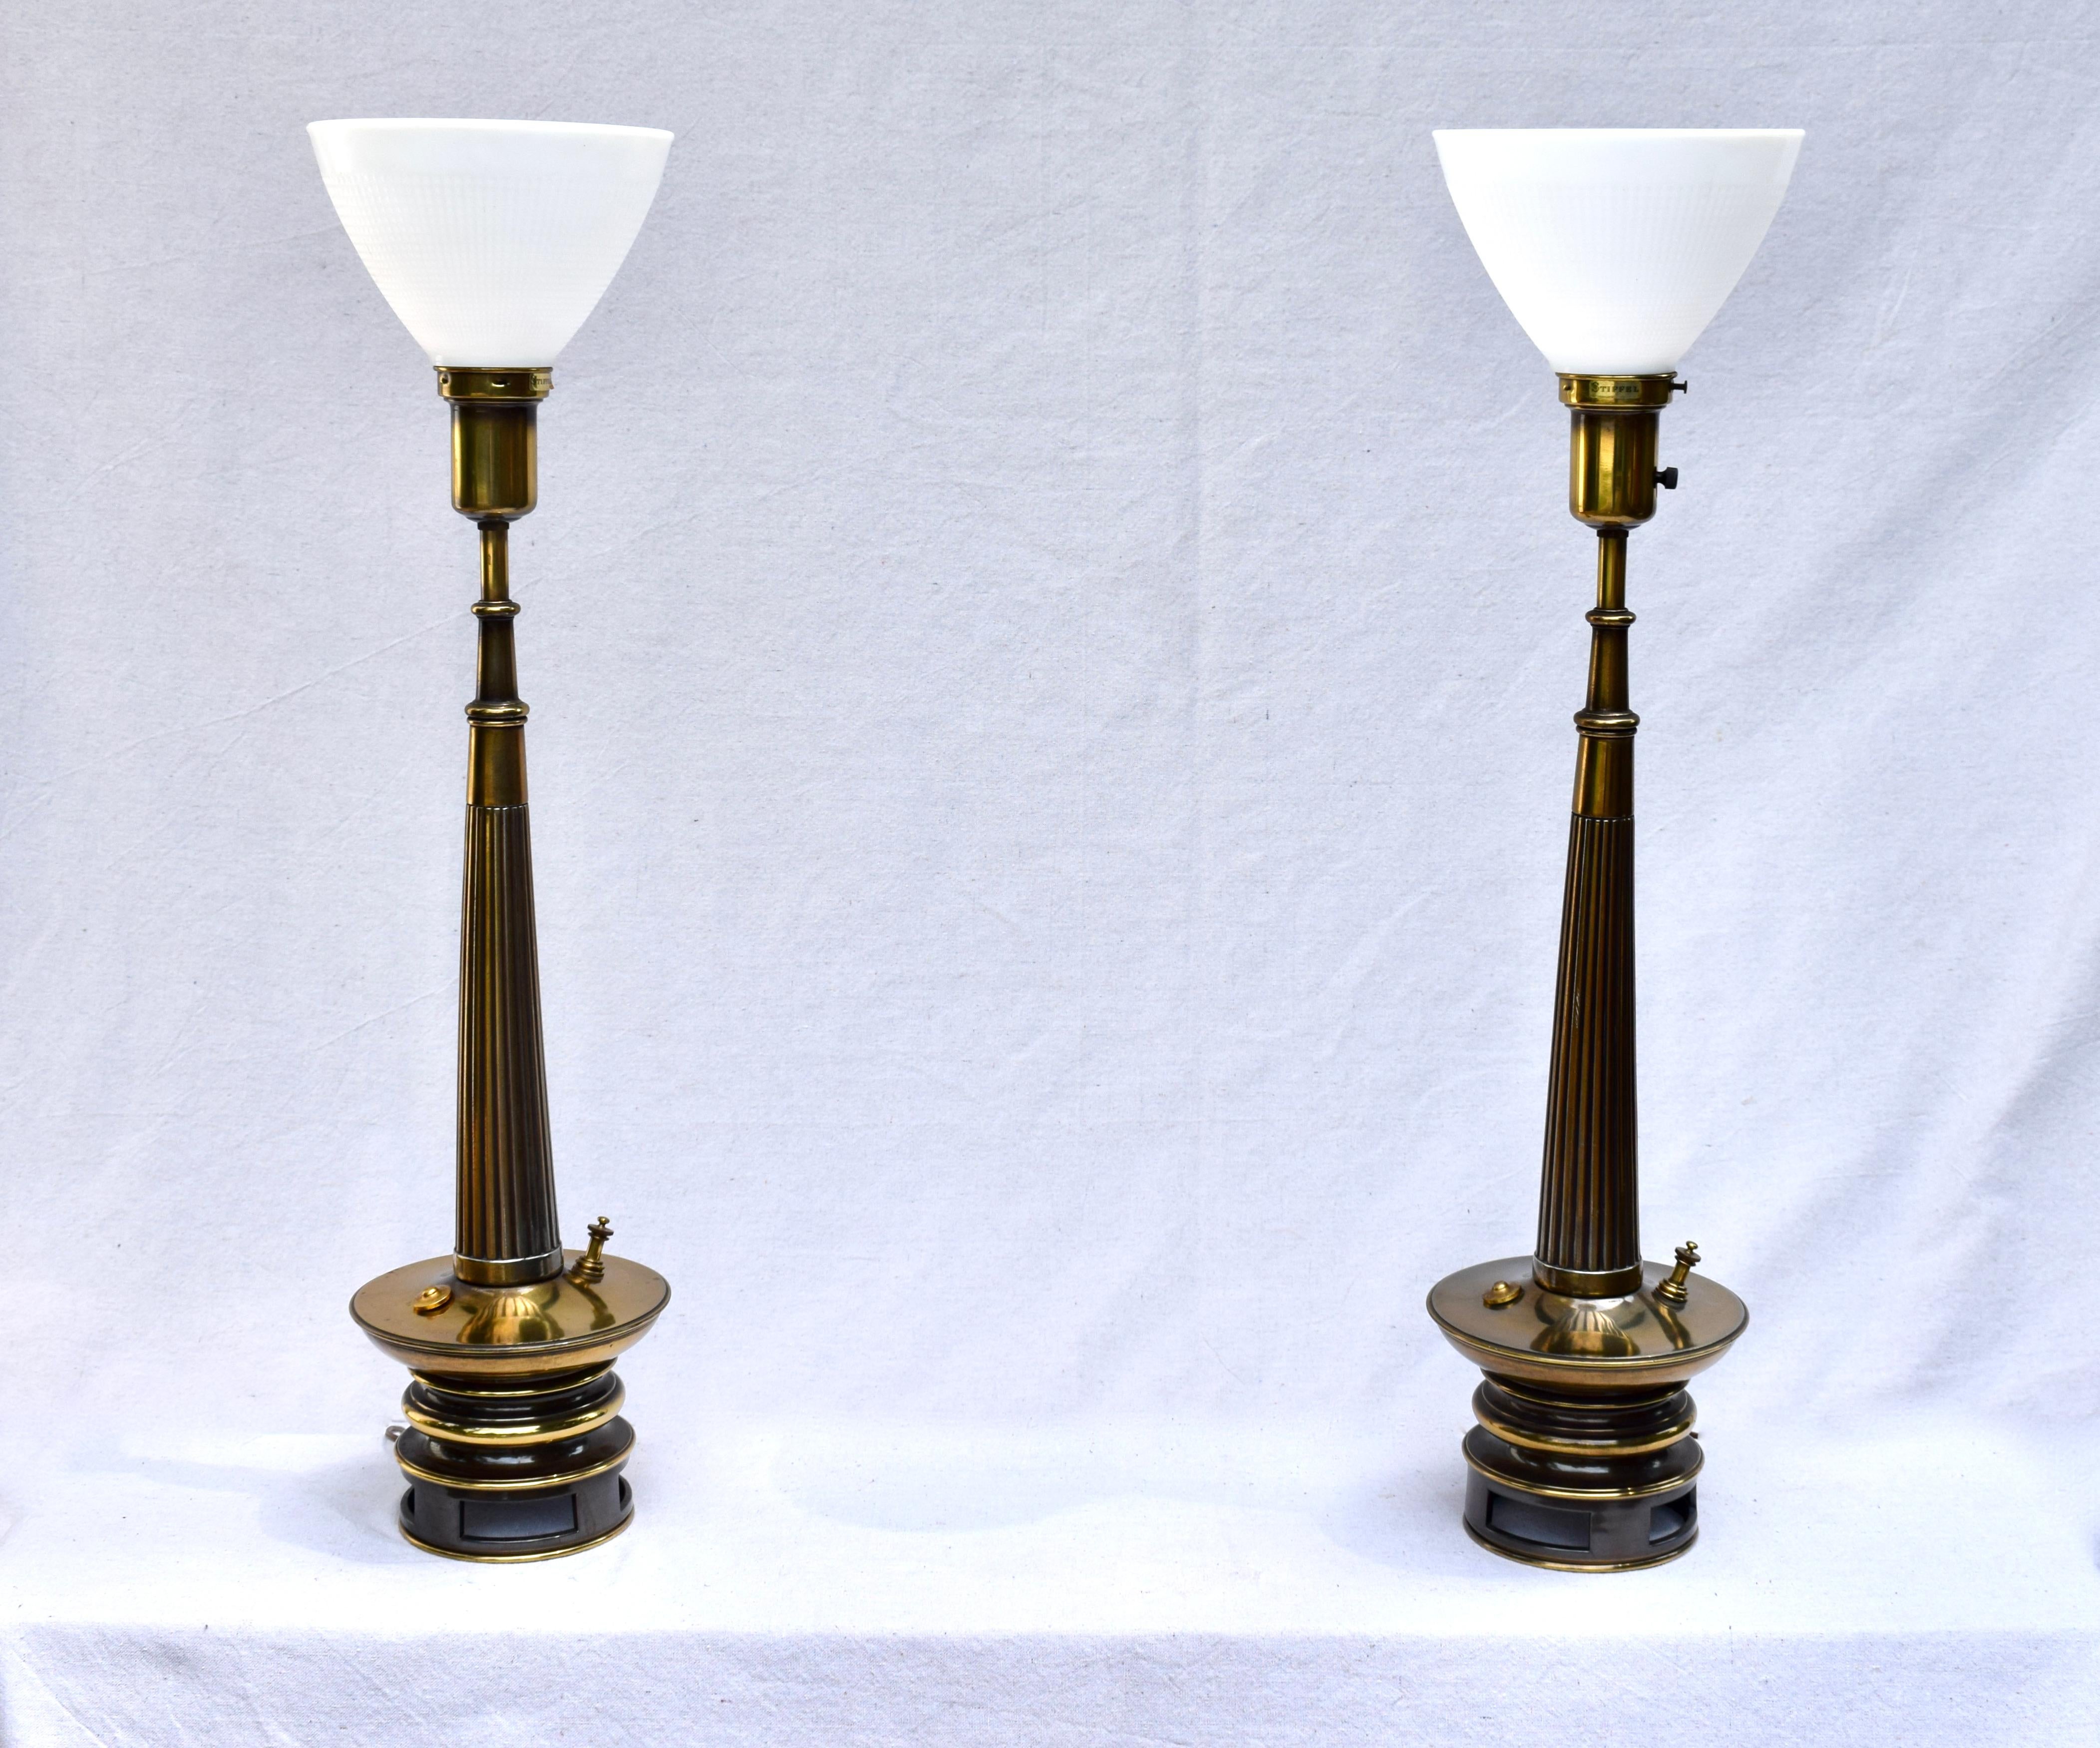 Ein Paar Transitional Mid- Century Modern Tischlampen von Stiffel.
Zu den Merkmalen gehören Stahlsockel in Gunmetal Gray mit sich nach oben verjüngenden, geriffelten Messingstielen und Fackelschirmen aus Milchglas. Die auffälligen original